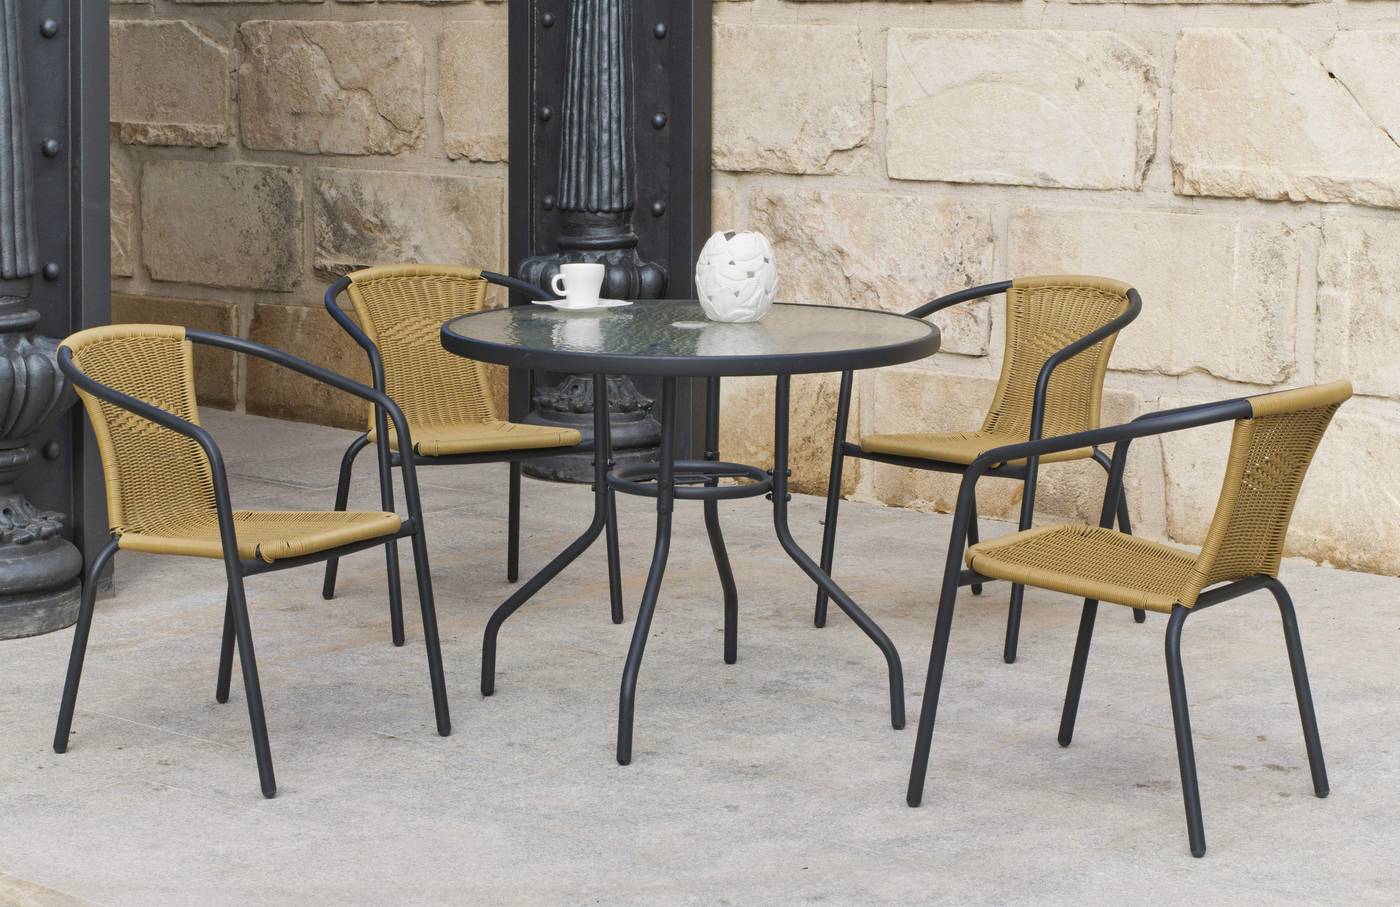 Conjunto de acero color antracita: mesa con tablero de cristal templado de 90 cm. + 4 sillones de acero y wicker sintético